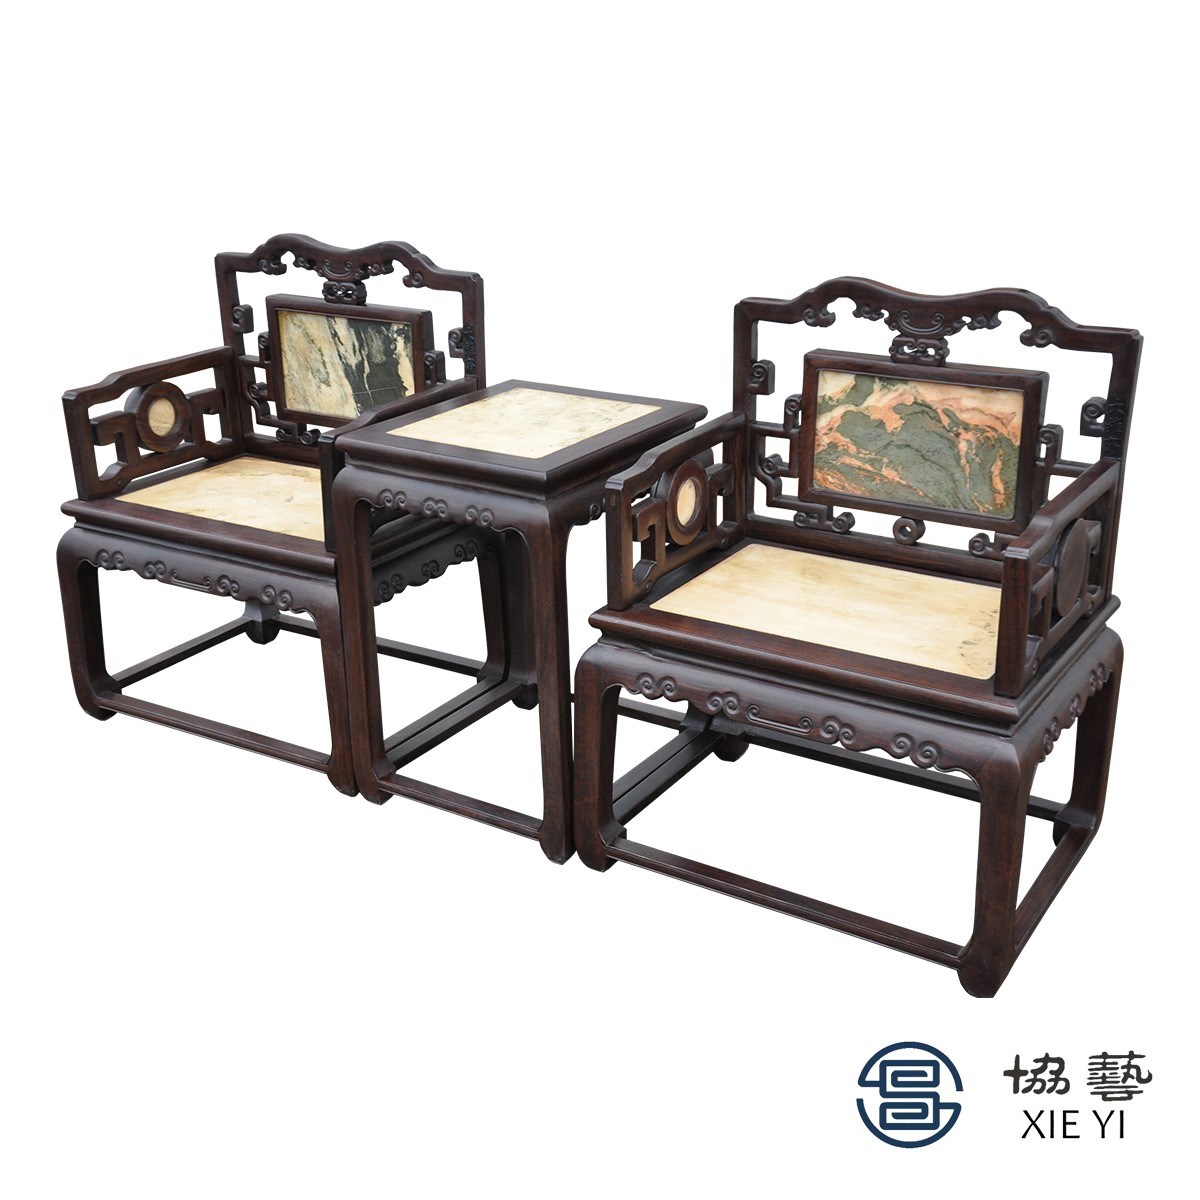 中式家具是从传统家具中演变过来的